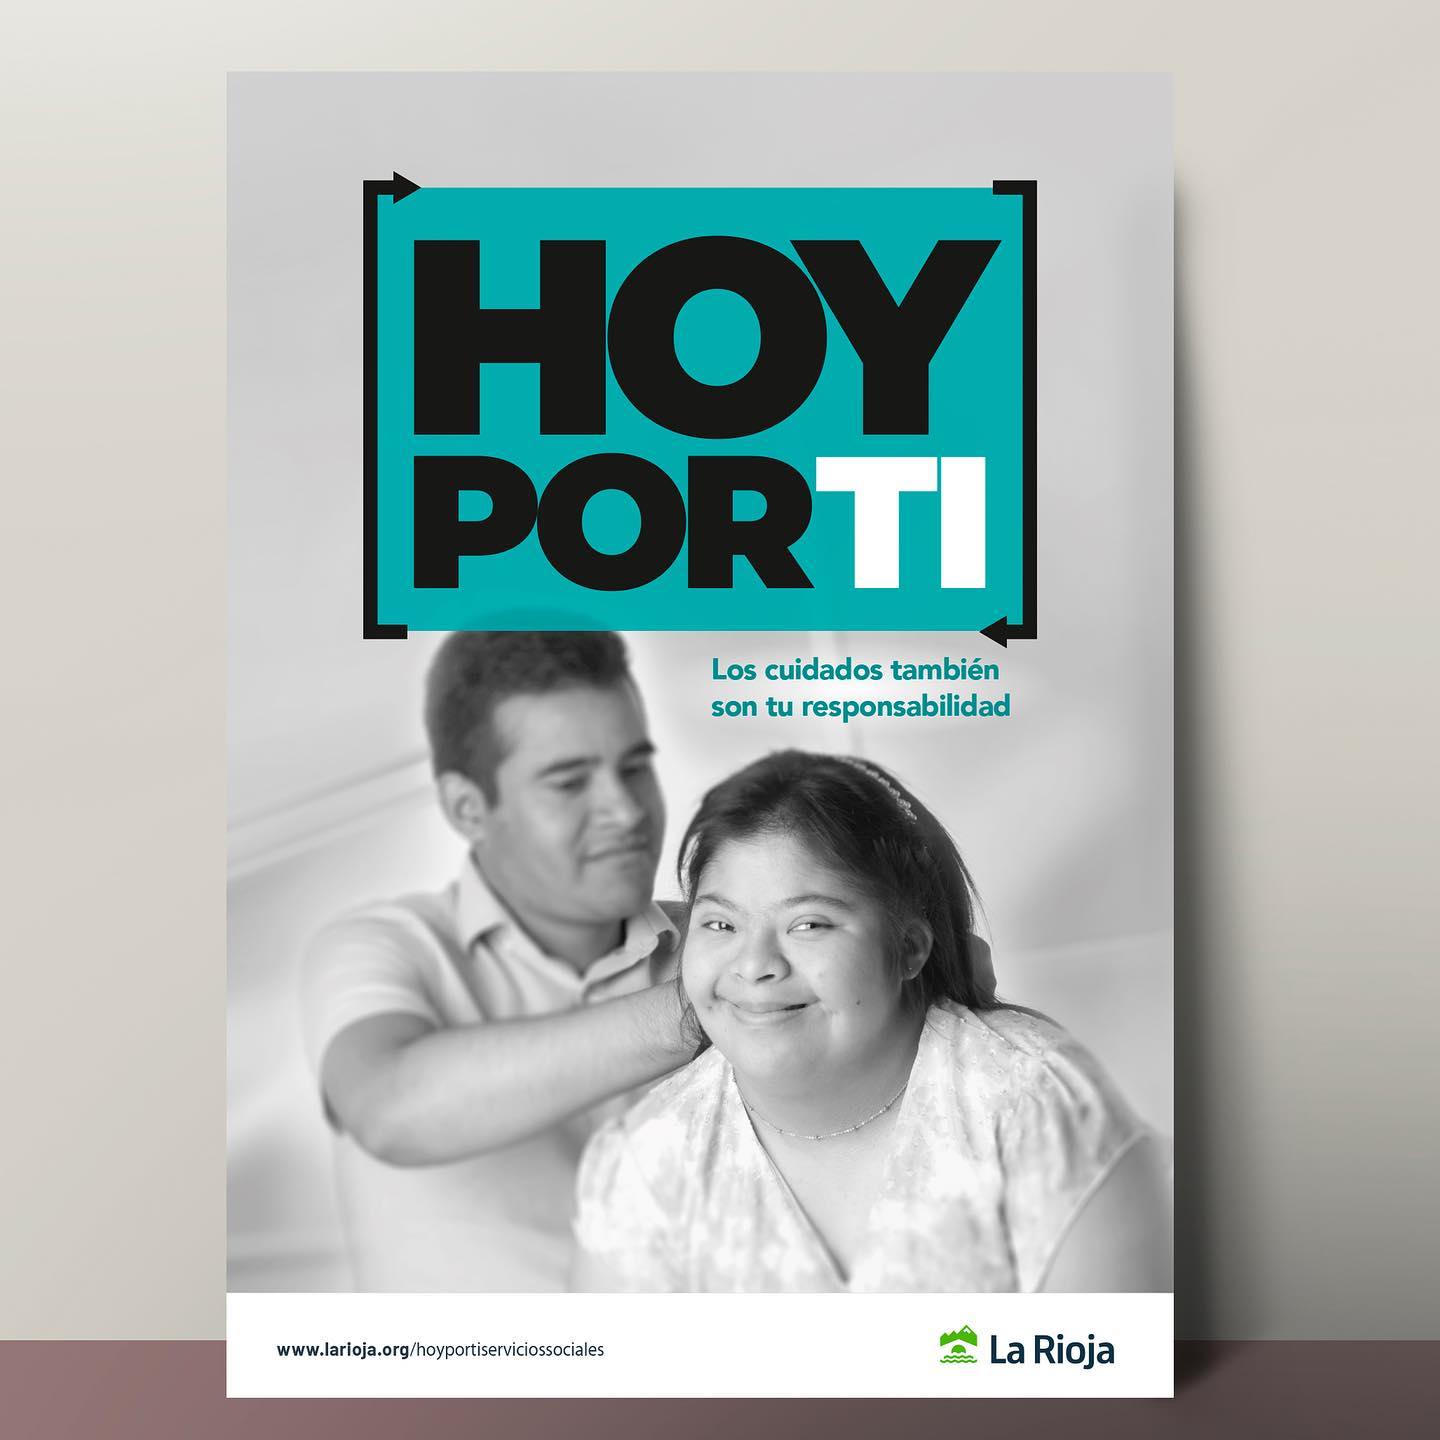 Campaña "Hoy por ti". Gobierno de La rioja.